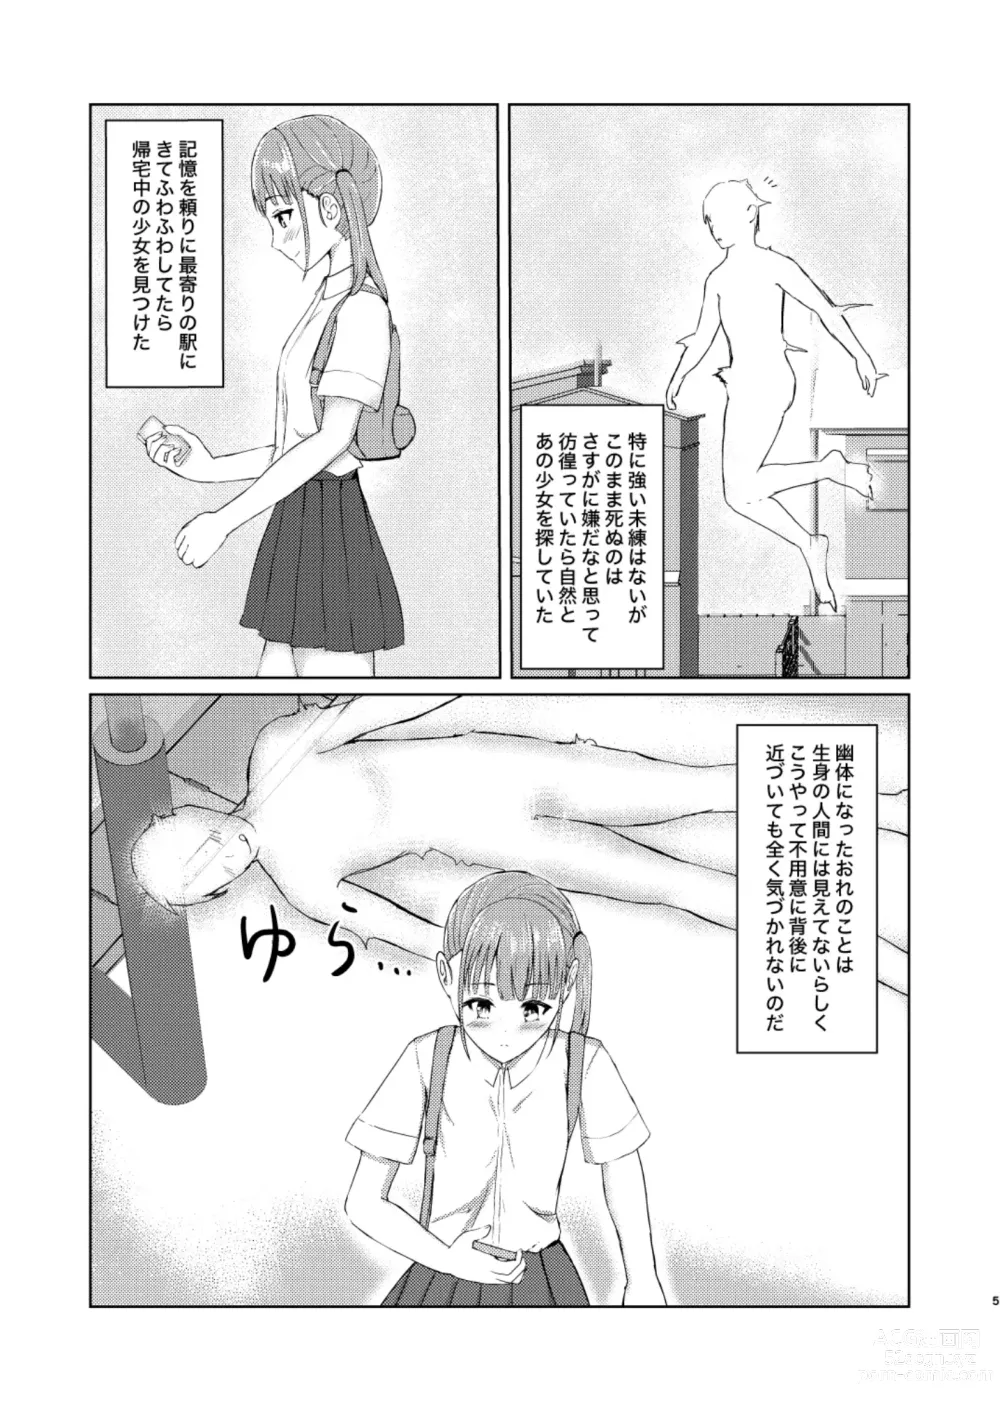 Page 5 of doujinshi Kawaii Ko Mitsuketa node Naka ni Haitte Mita!